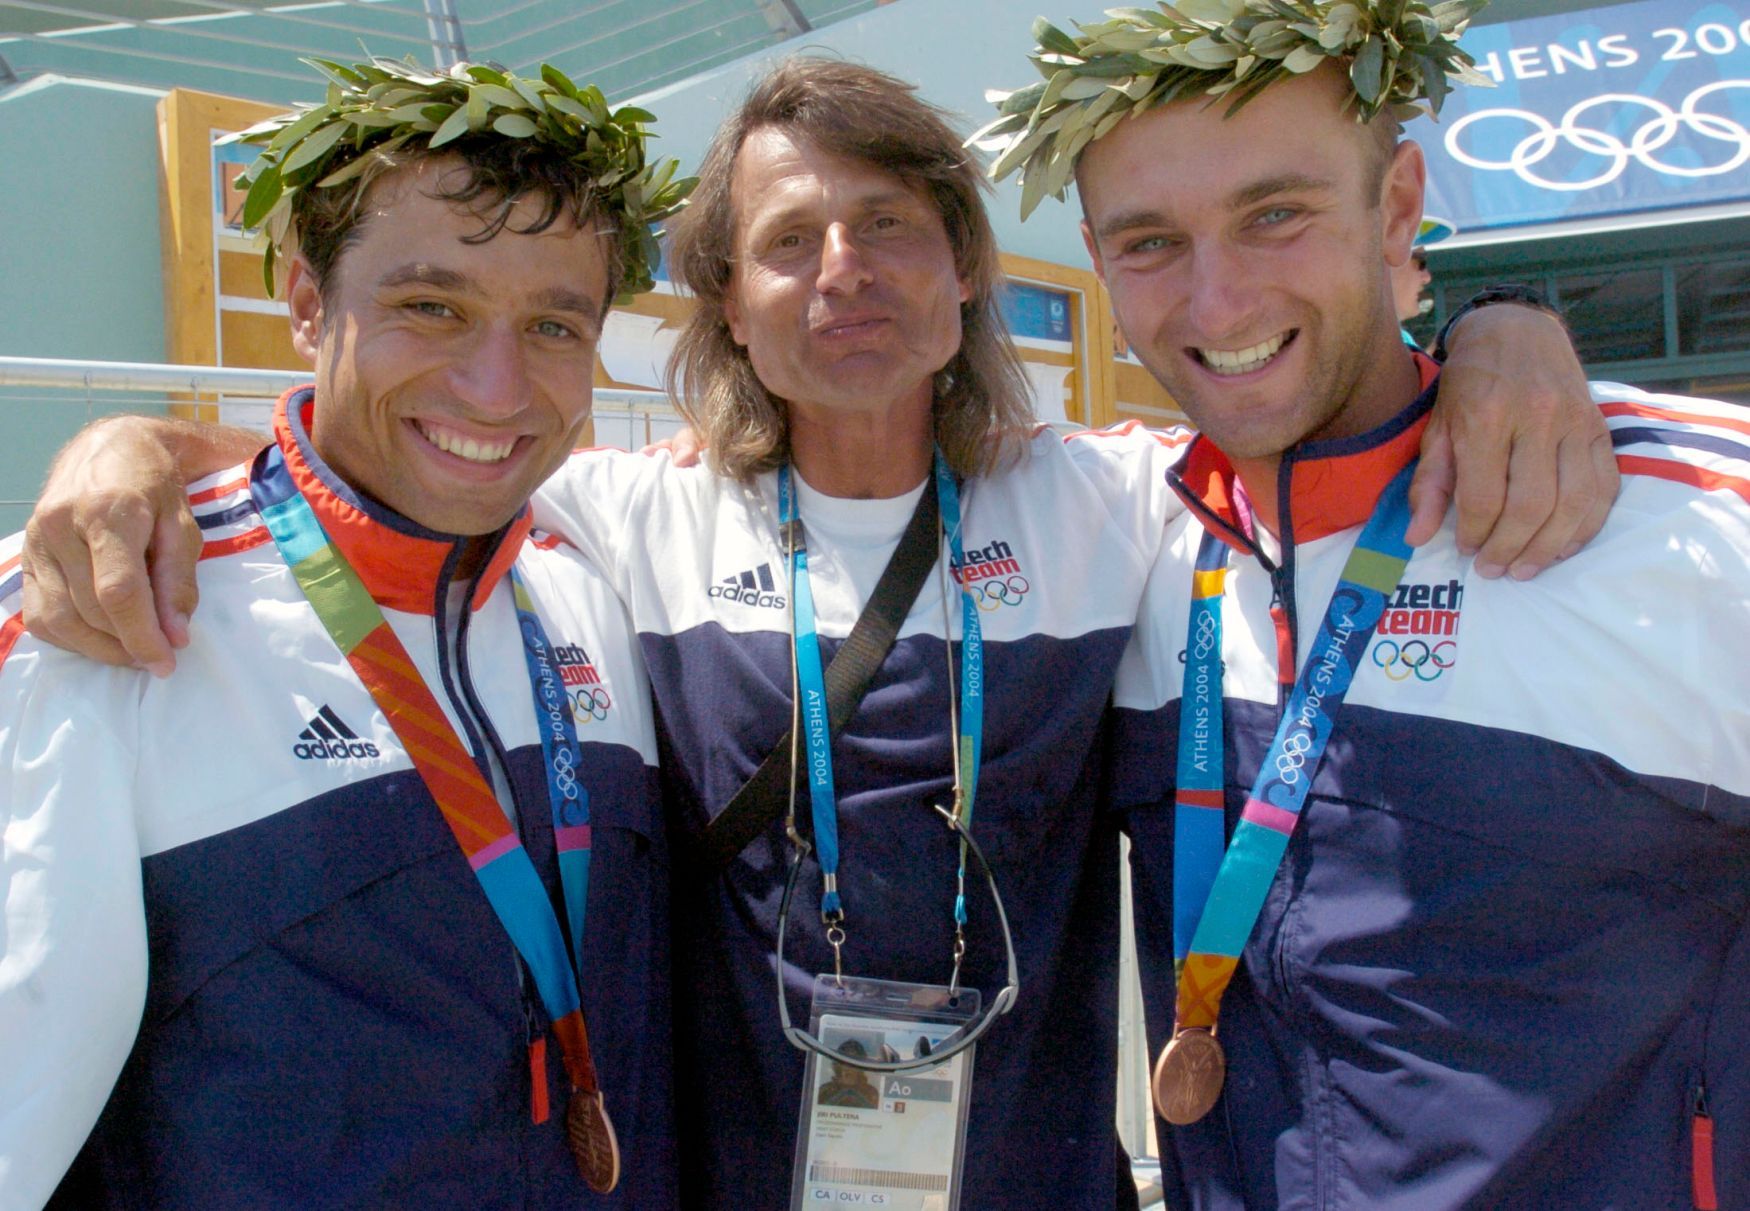 Jiří Pultera s bronzovými deblkanoisty Jaroslavem Volfem a Ondřejem Štěpánkem na hrách v Aténách 2004